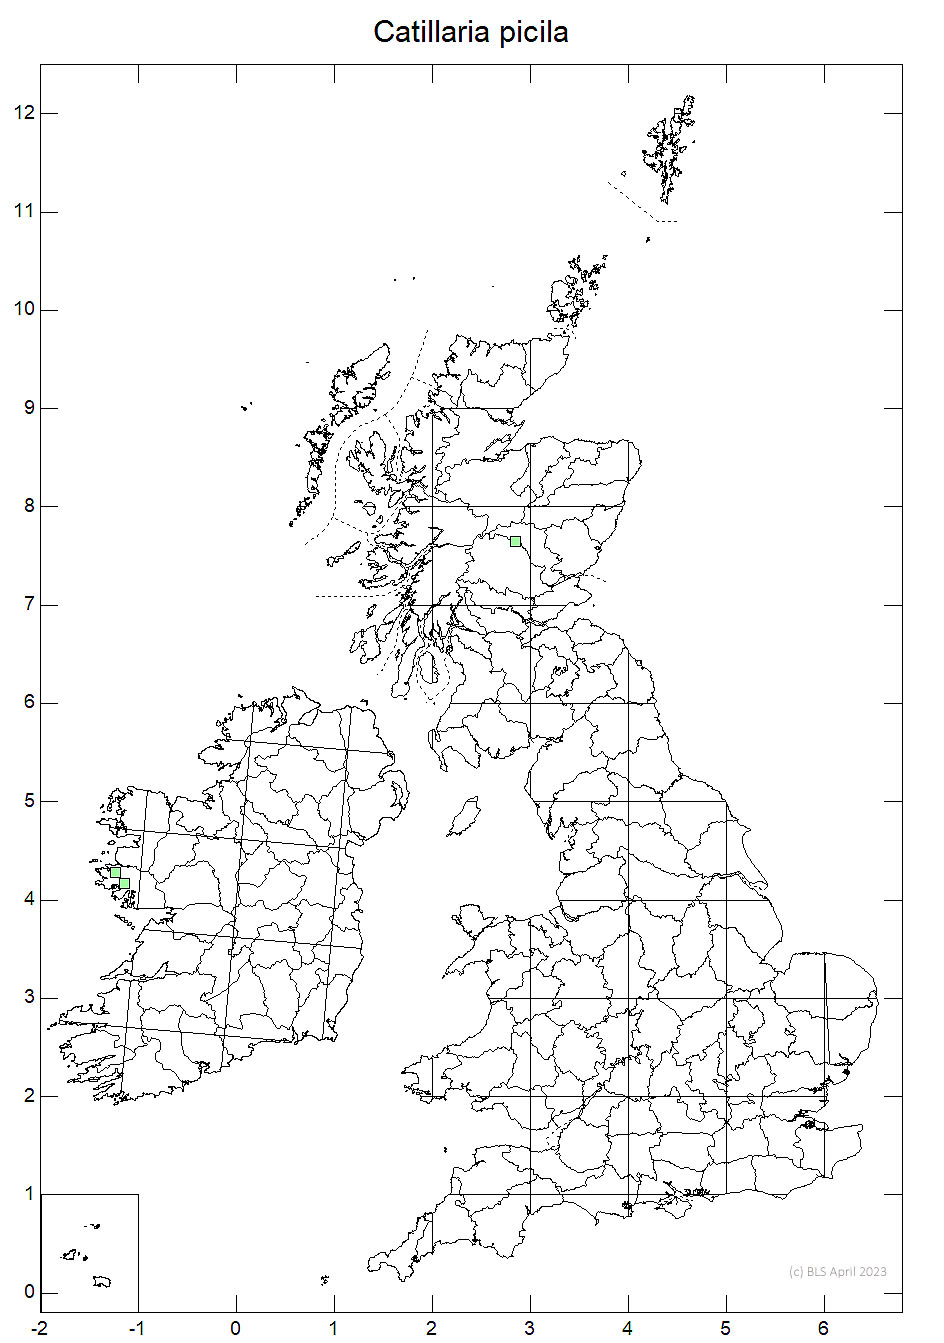 Catillaria picila 10km sq distribution map